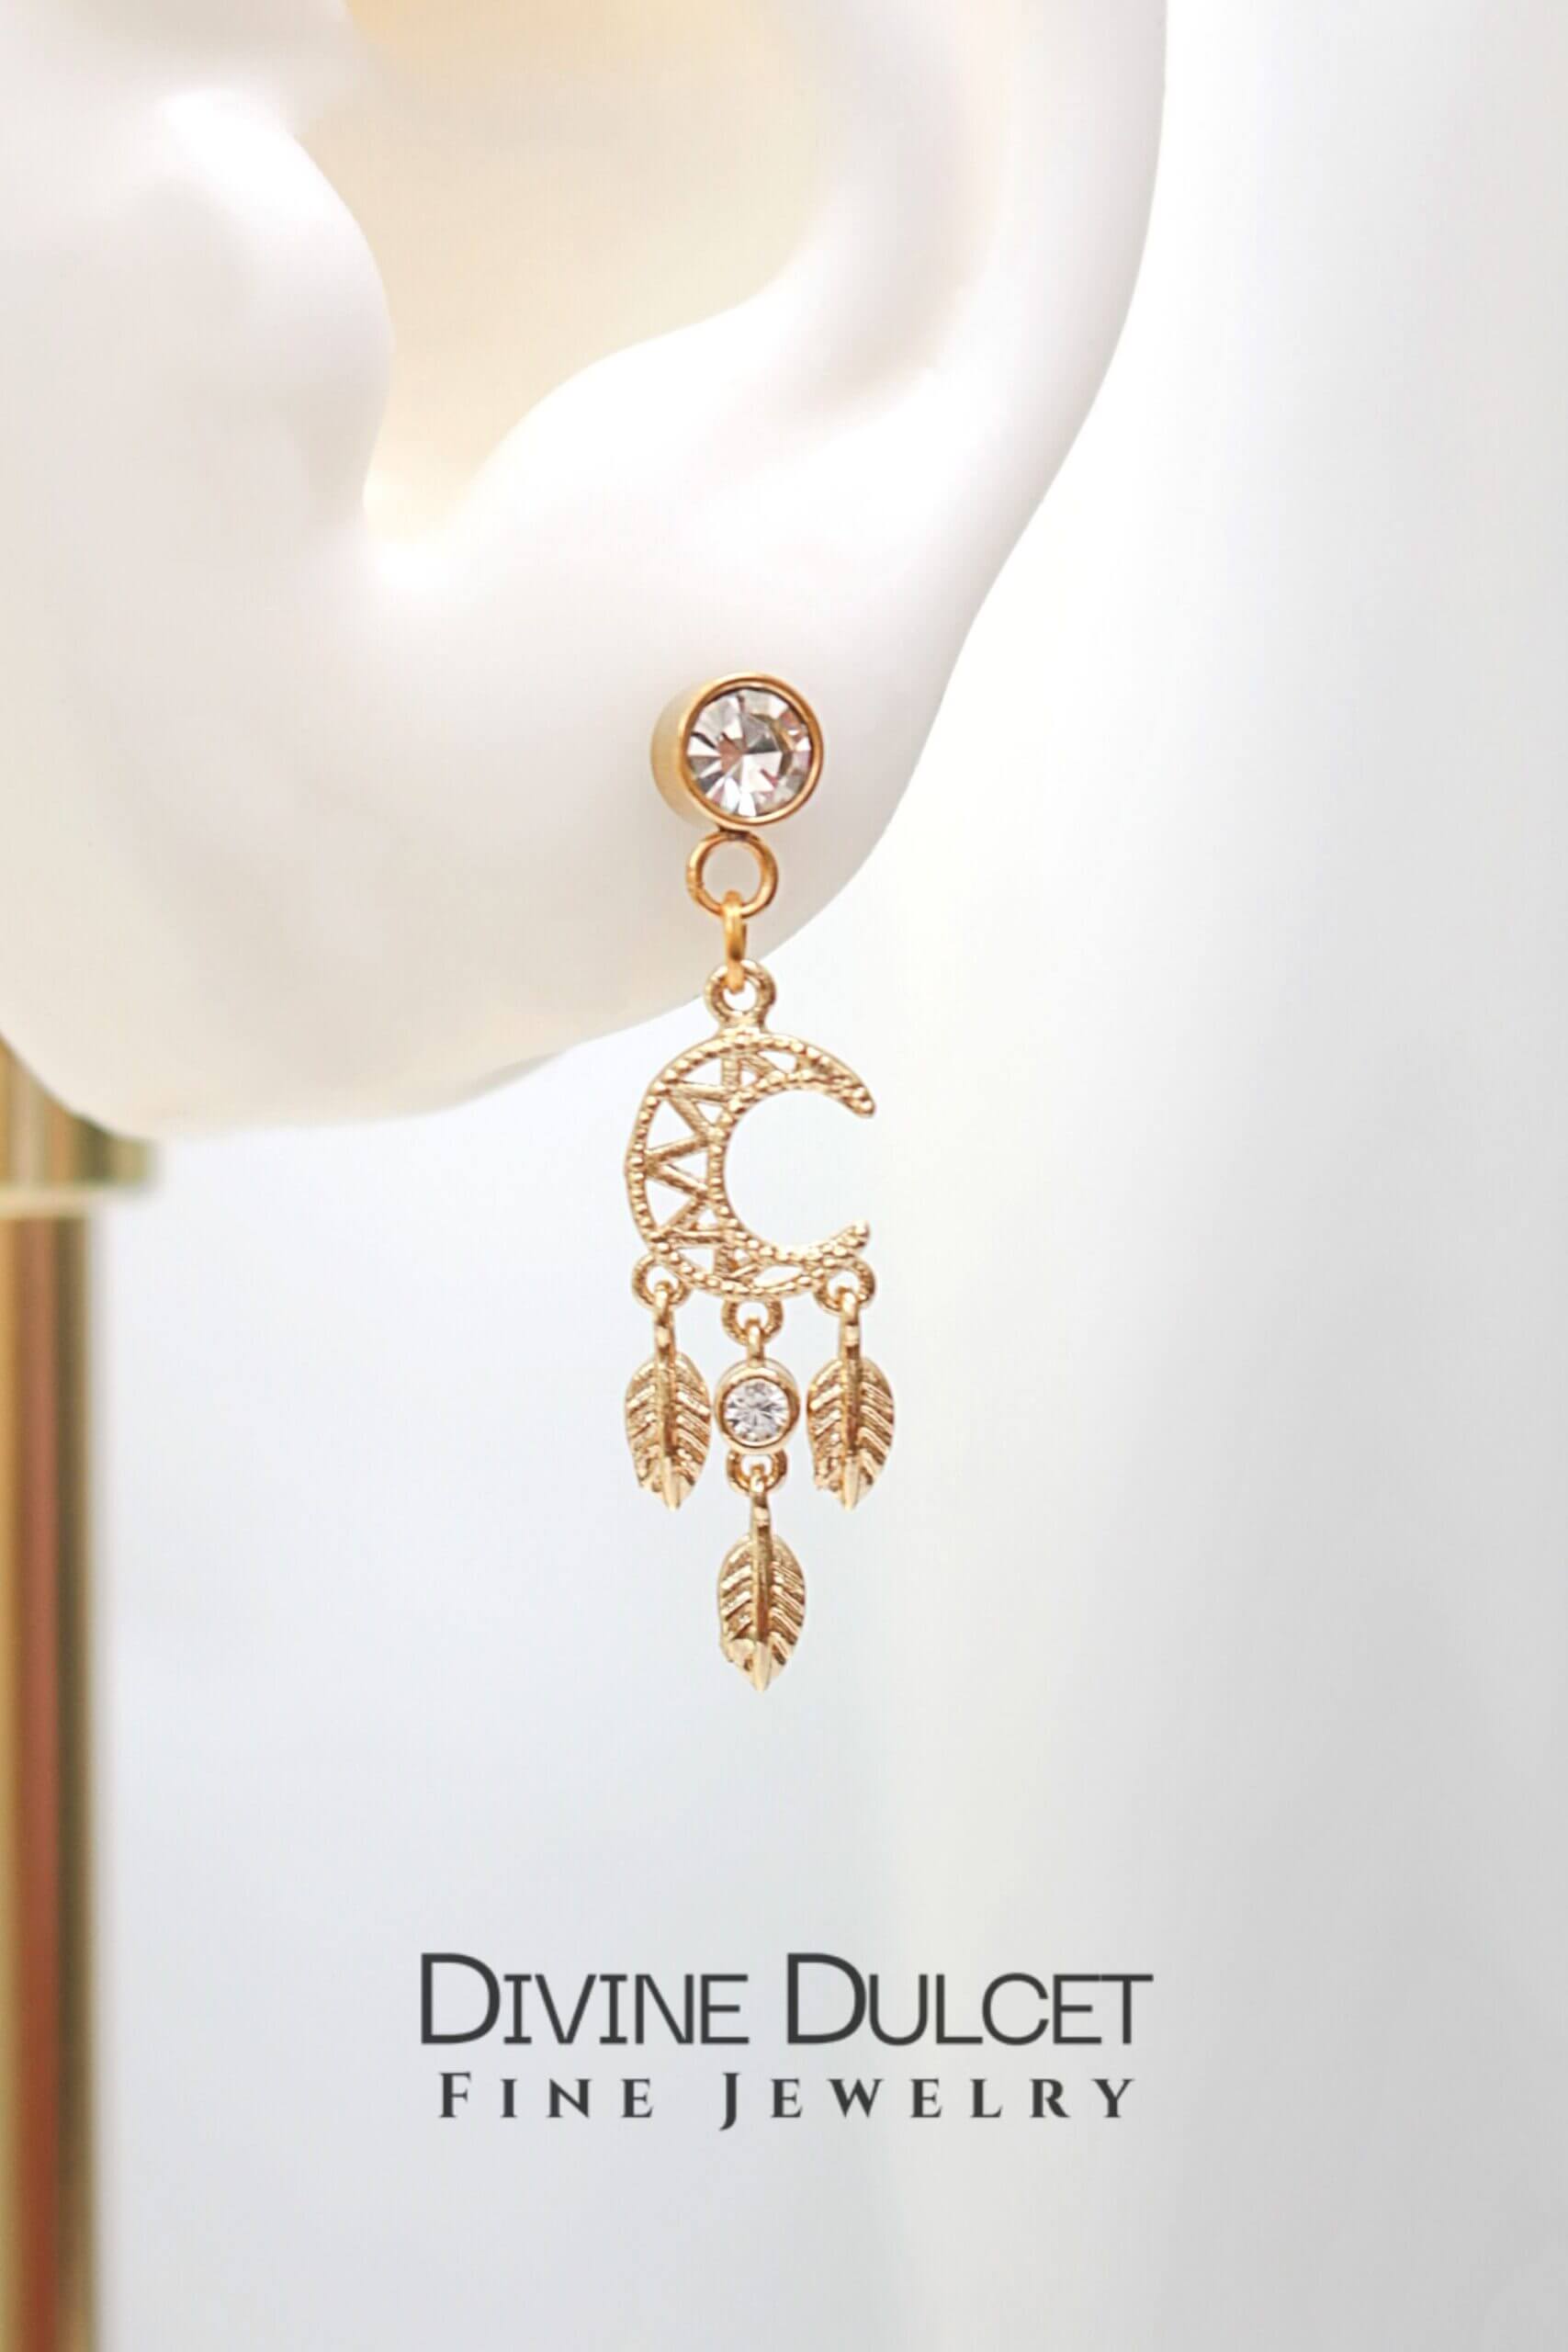 24 Karat Moon Stud Earrings - Dazzling Cubic Zirconia Dream Catcher Jewelry Bijou Her